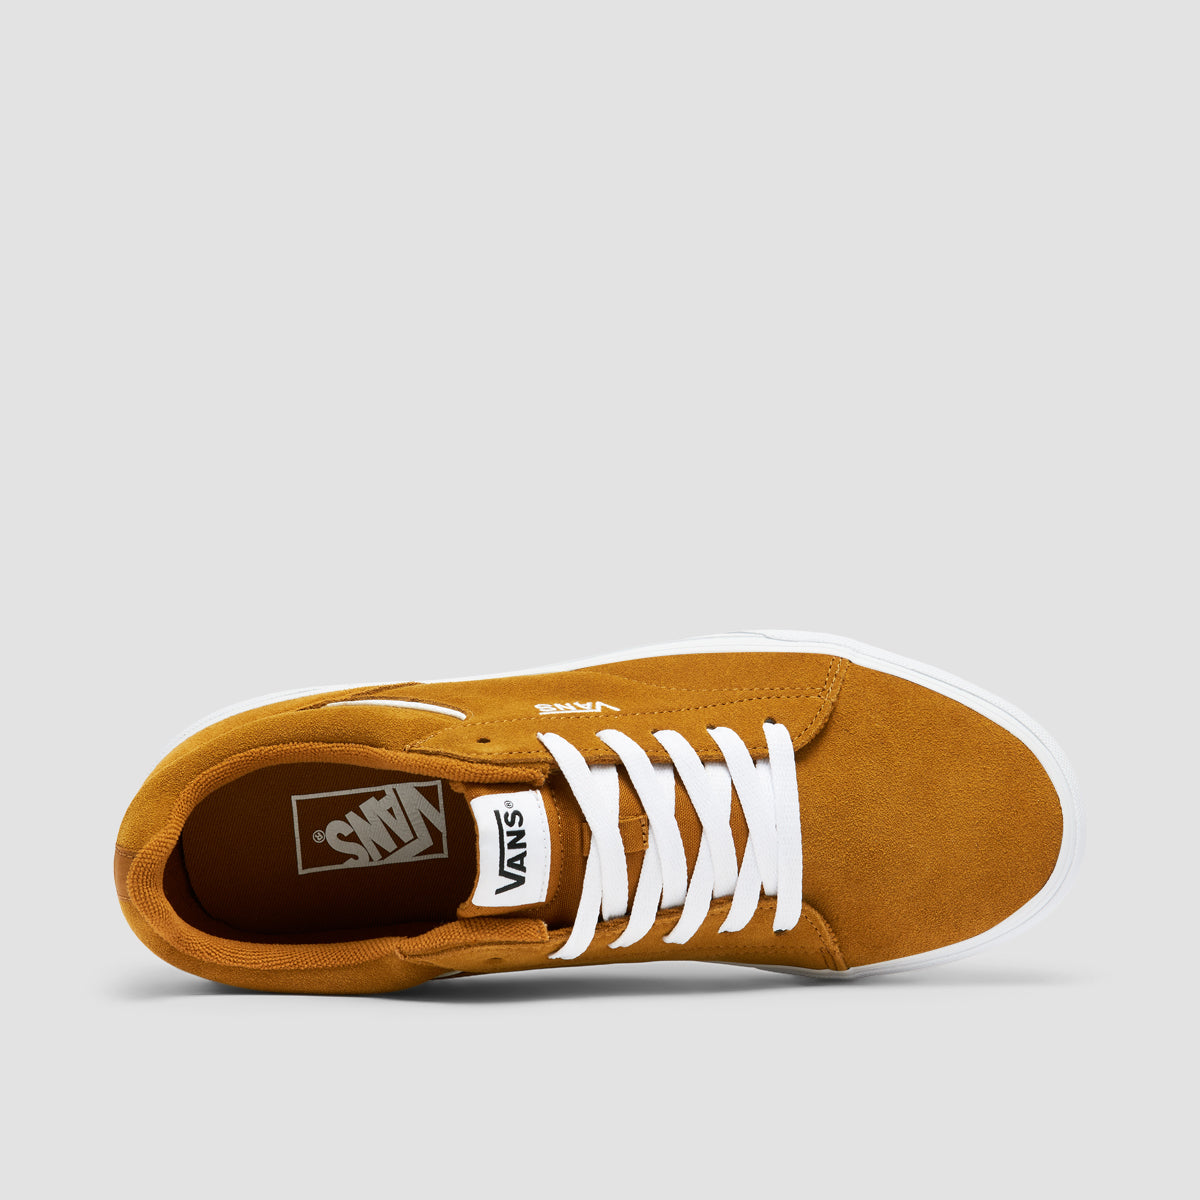 Vans Seldan Shoes - Suede Golden Brown